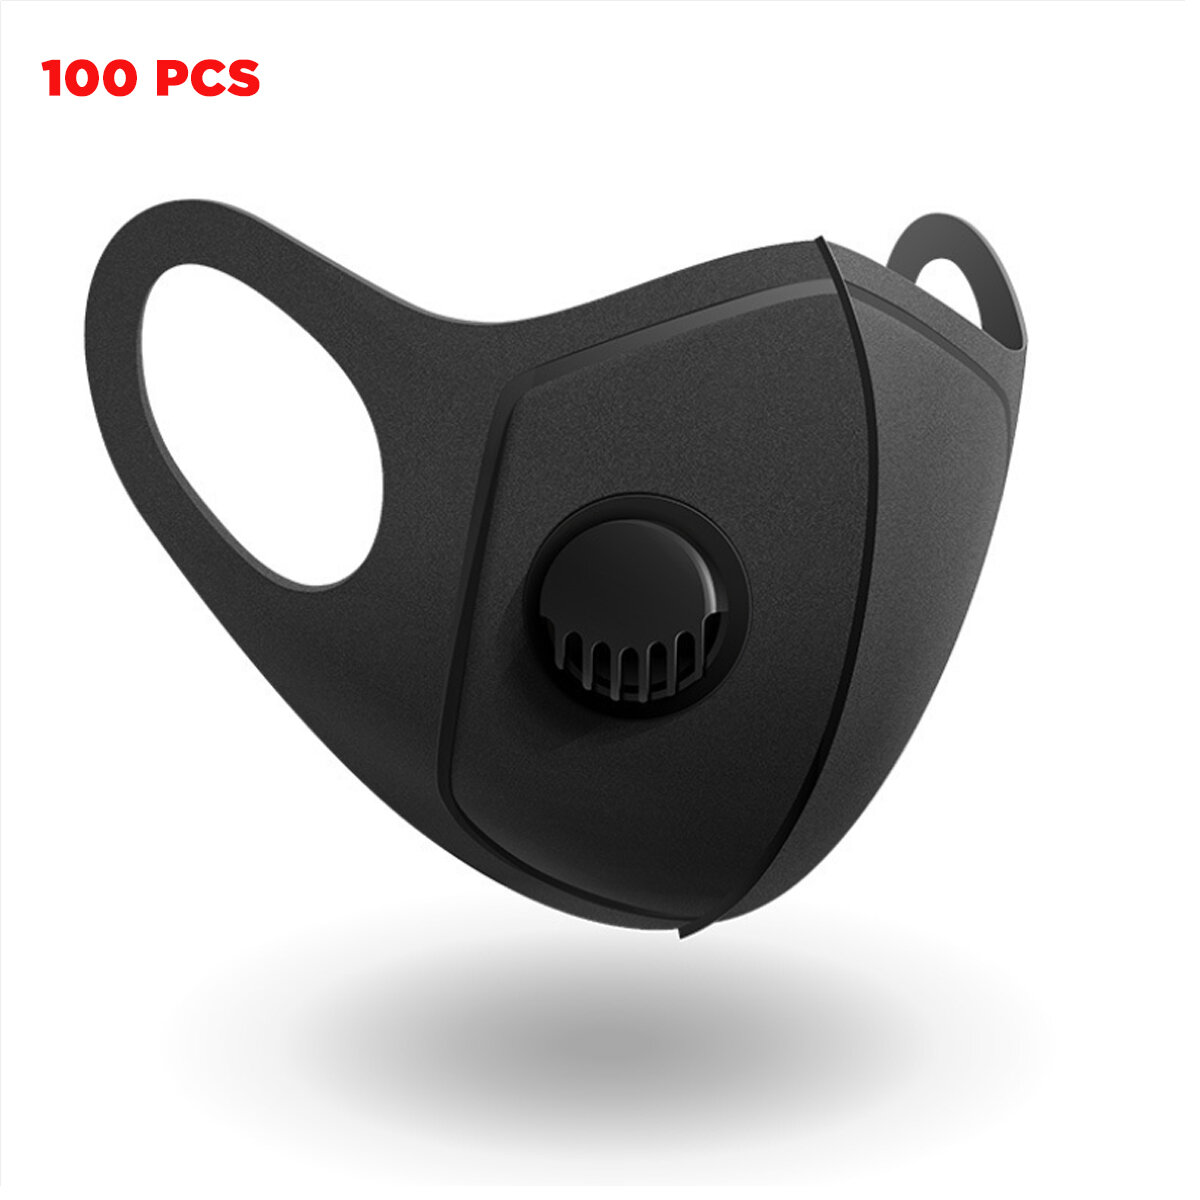 100 stuks PM2.5 gezichtsmaskers voor kamperen, reizen, fietsen met drielaags filter, ademend, stofdicht, mondkapje